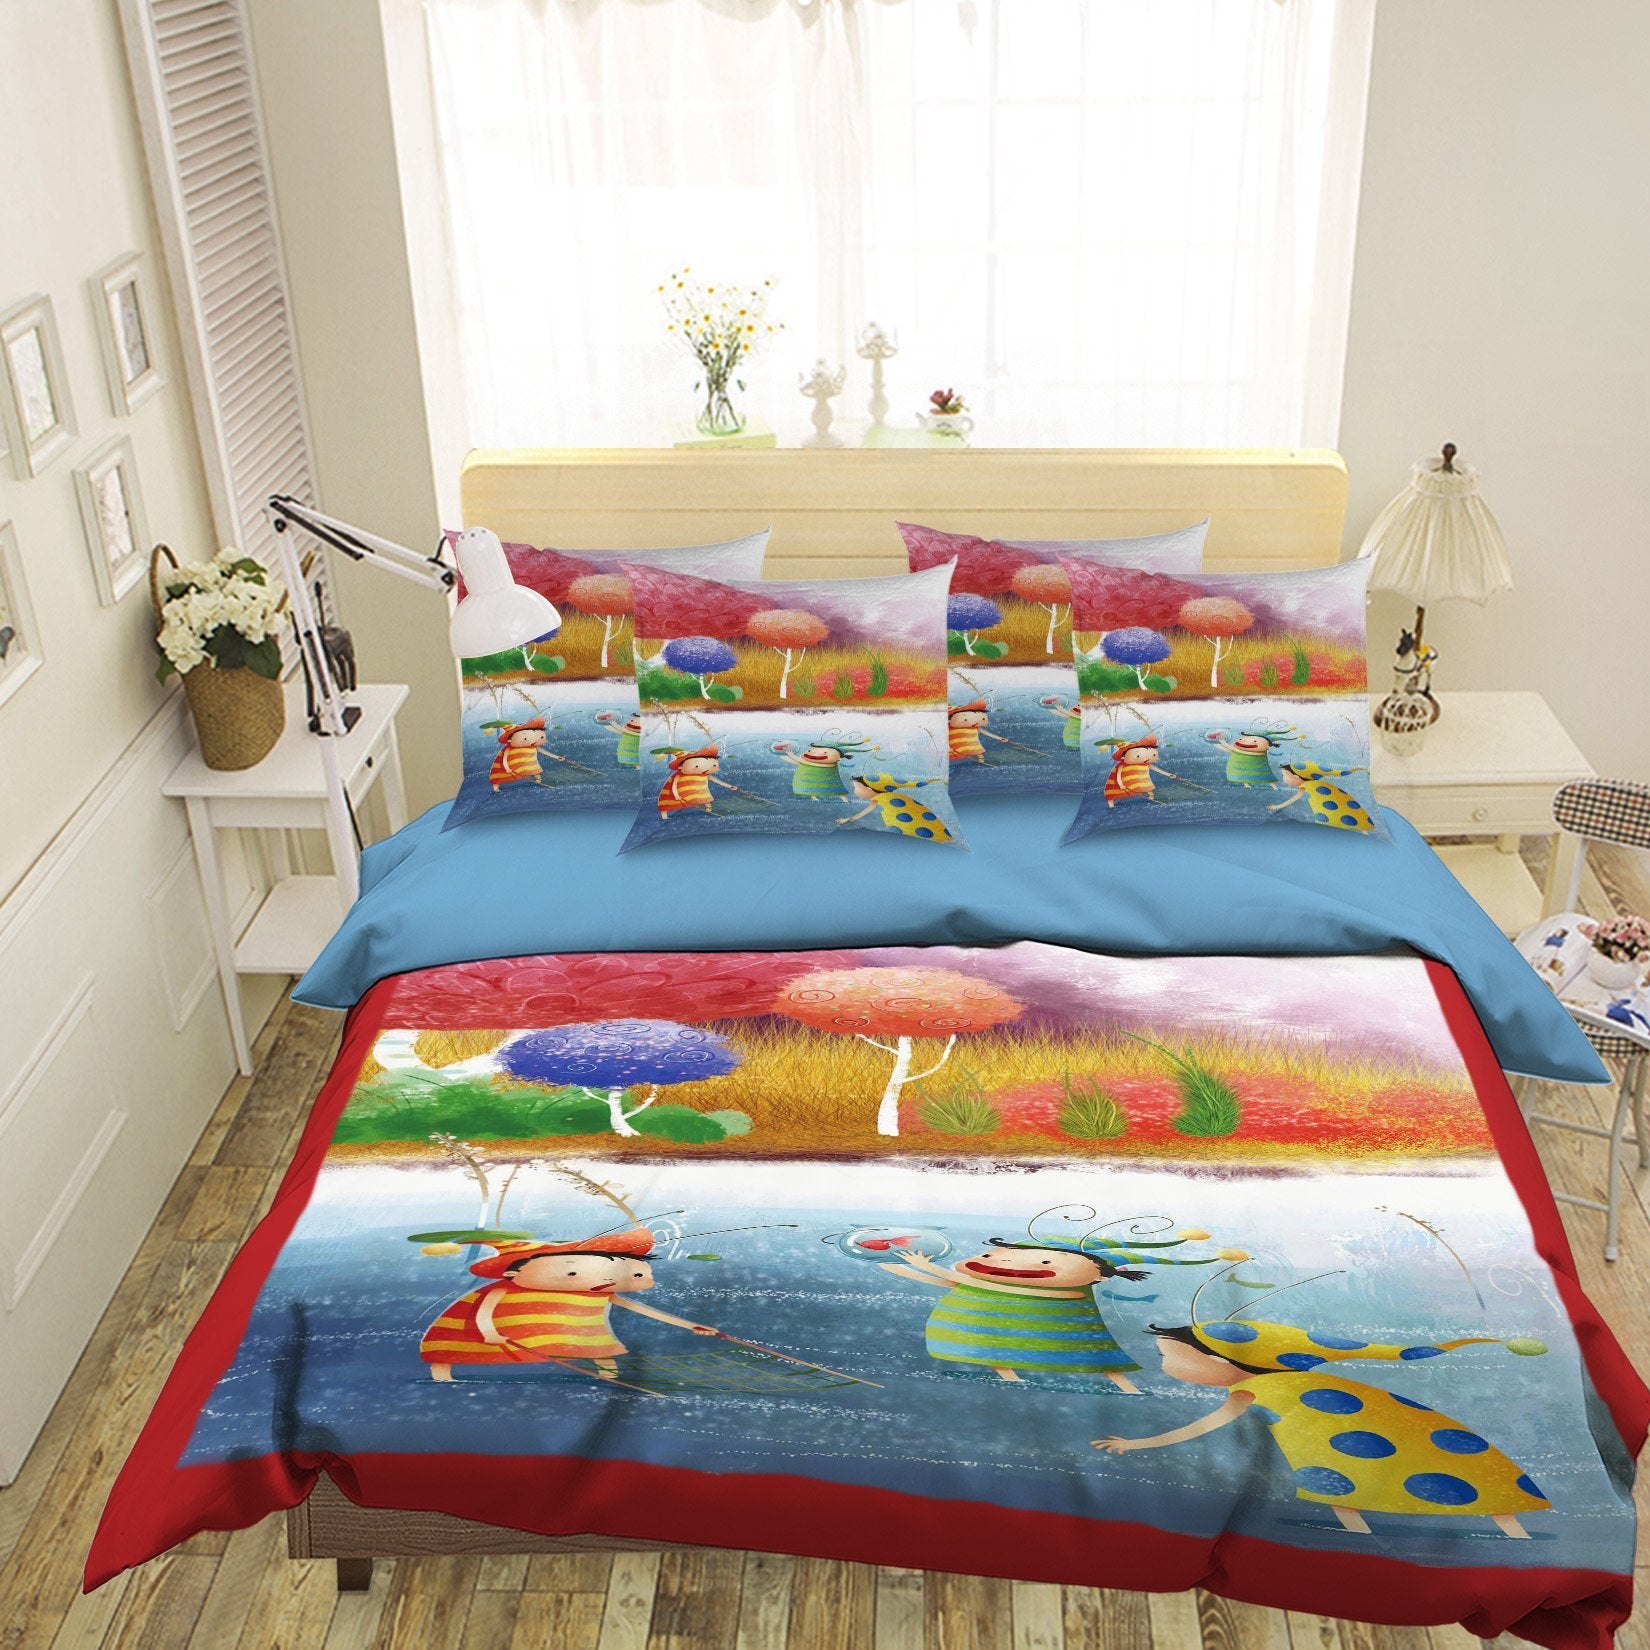 3D Playful kids 114 Bed Pillowcases Quilt Wallpaper AJ Wallpaper 